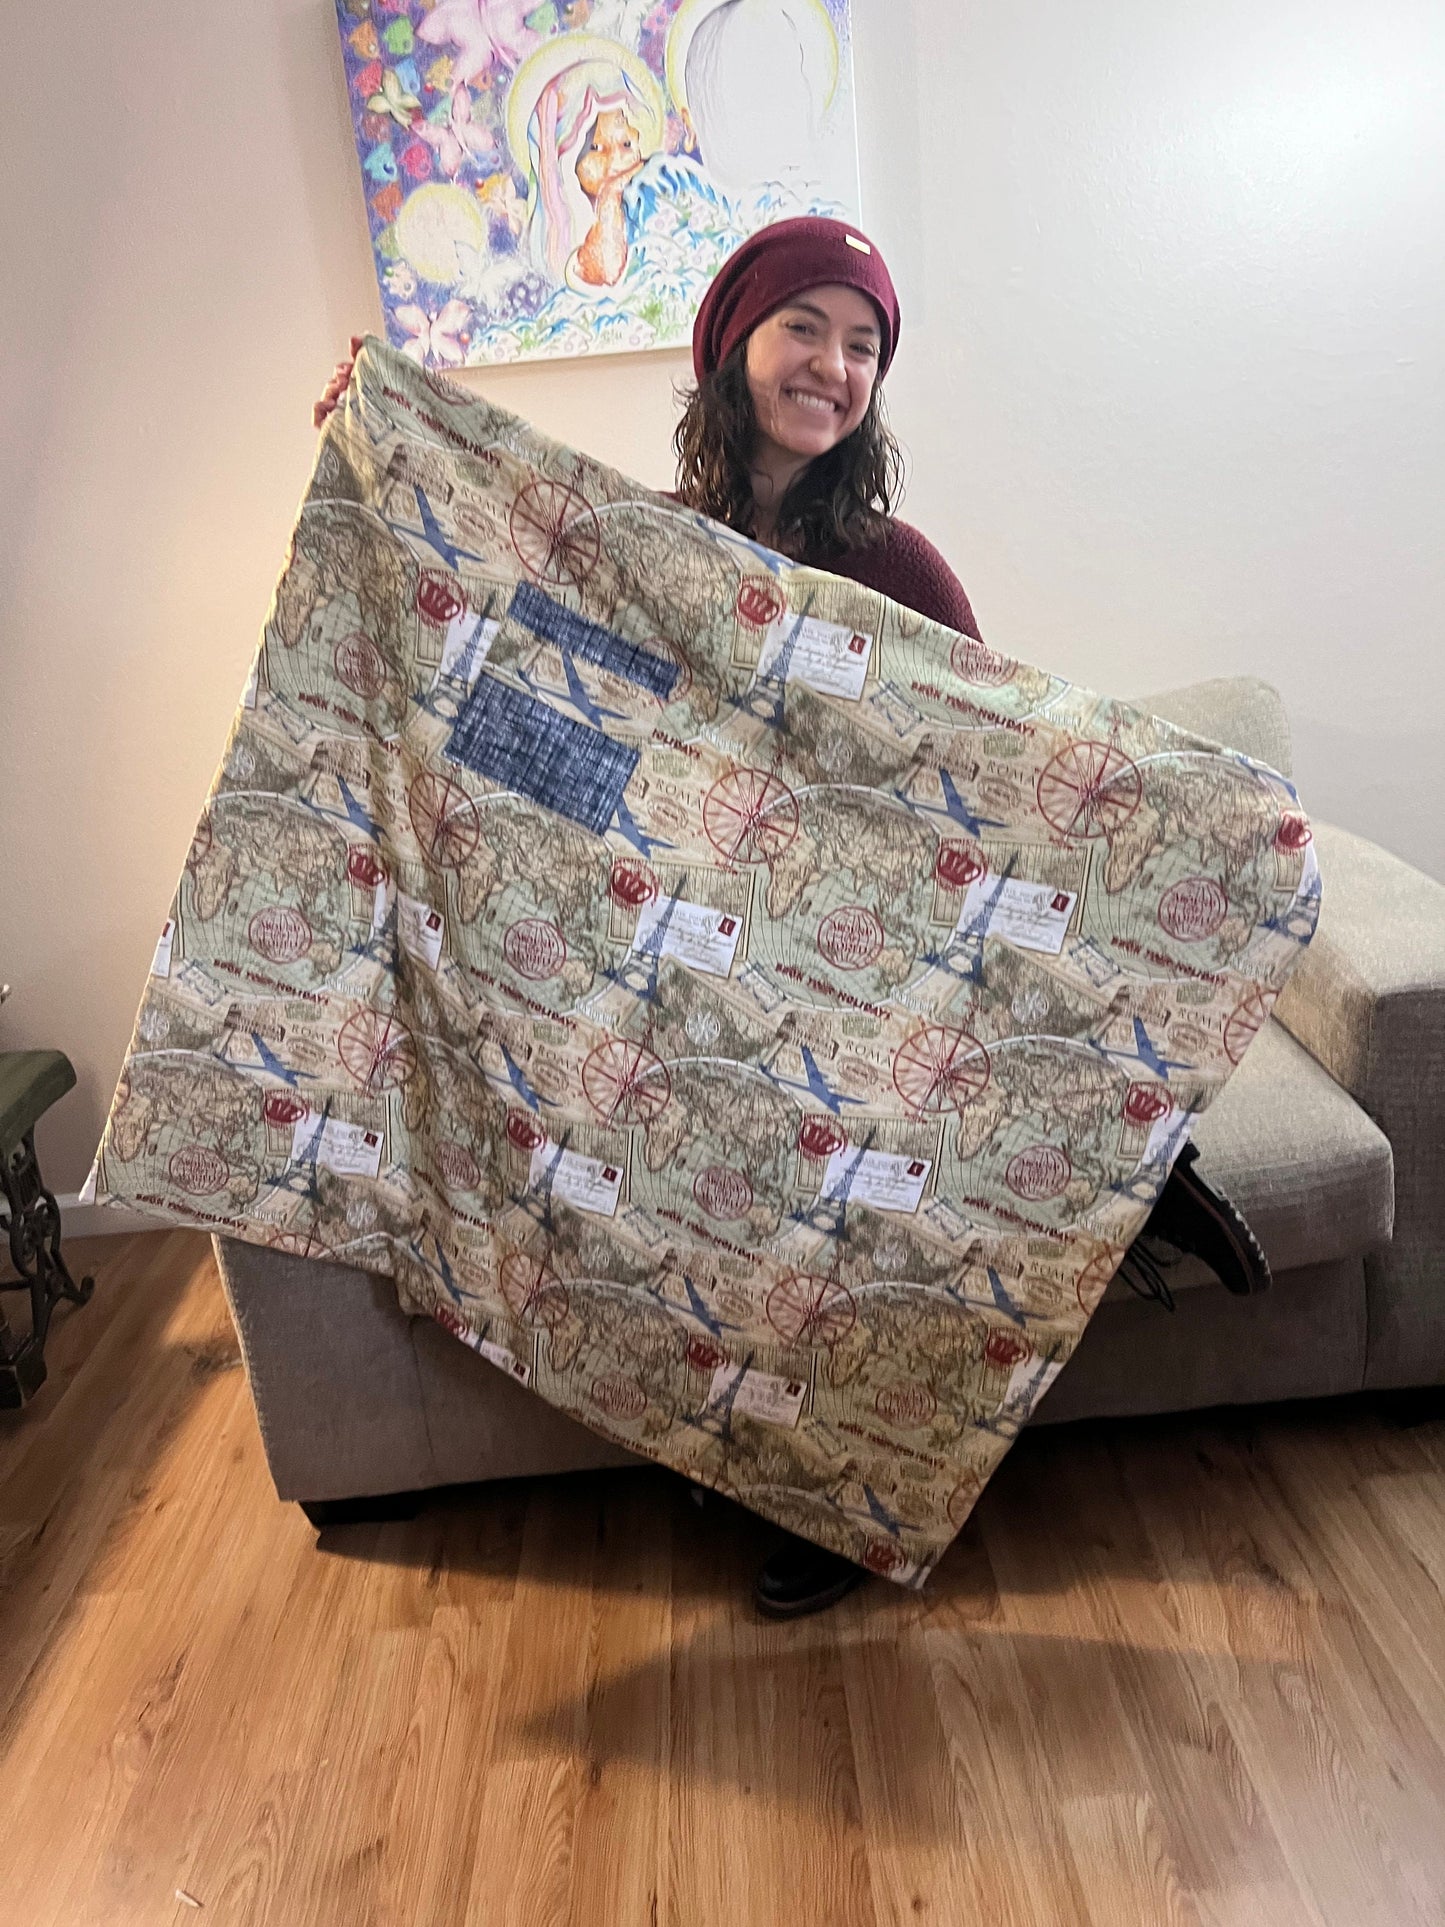 Unique World Traveler Lap Quilt/Blanket